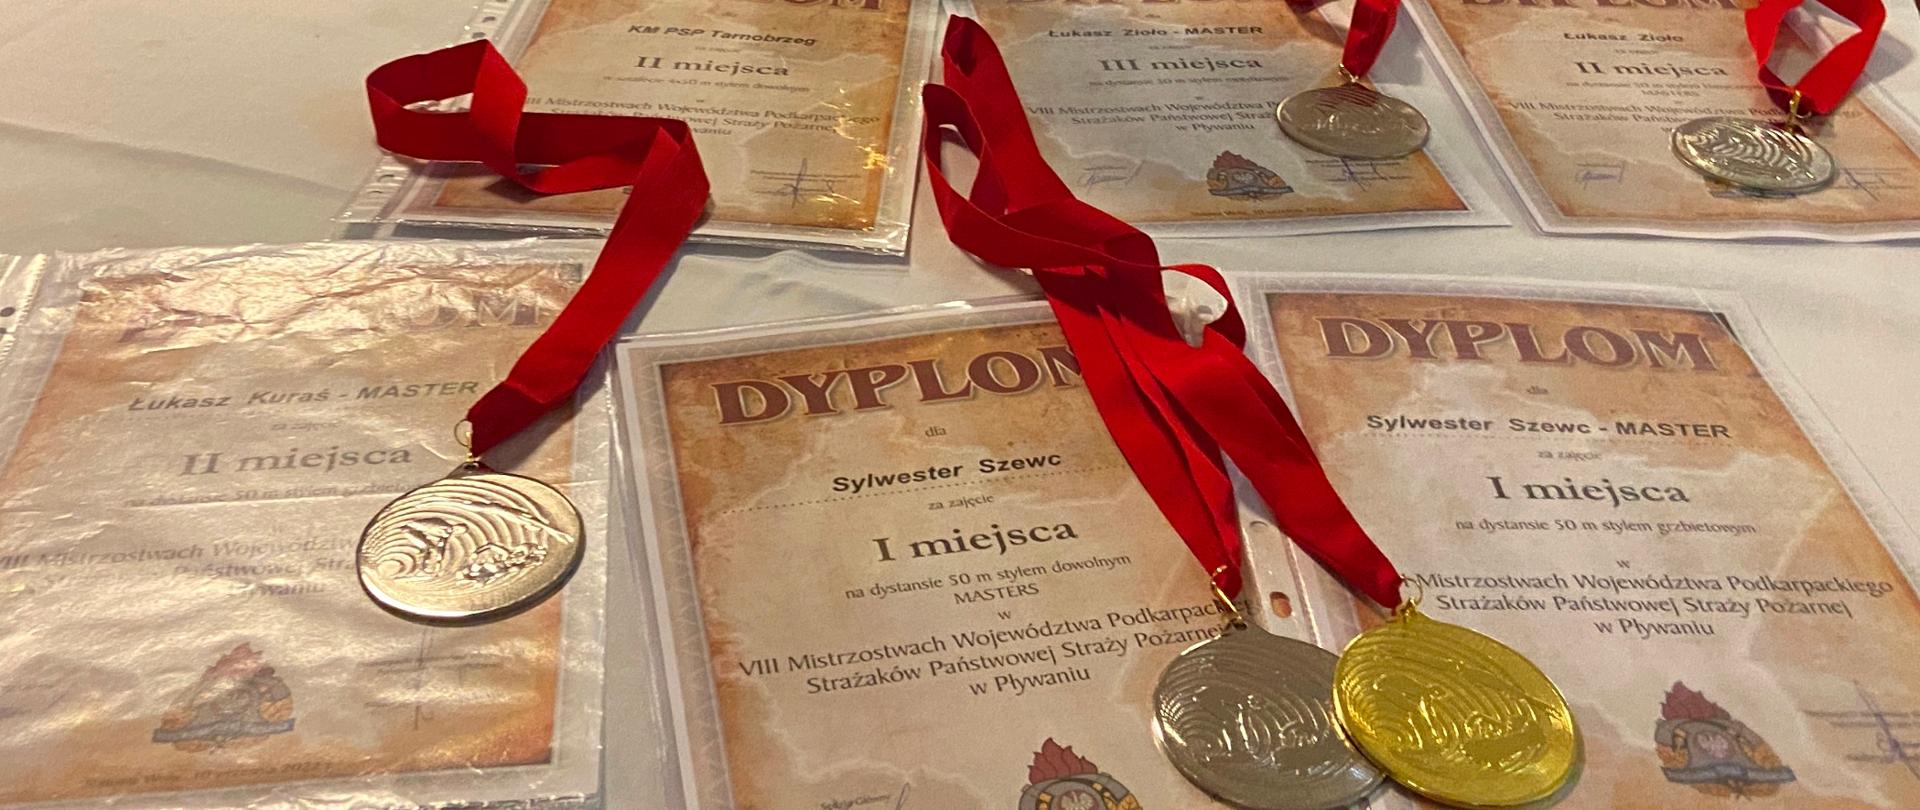 Medale oraz dyplomy za zajęcie czołowych miejsc w mistrzostwach pływackich.